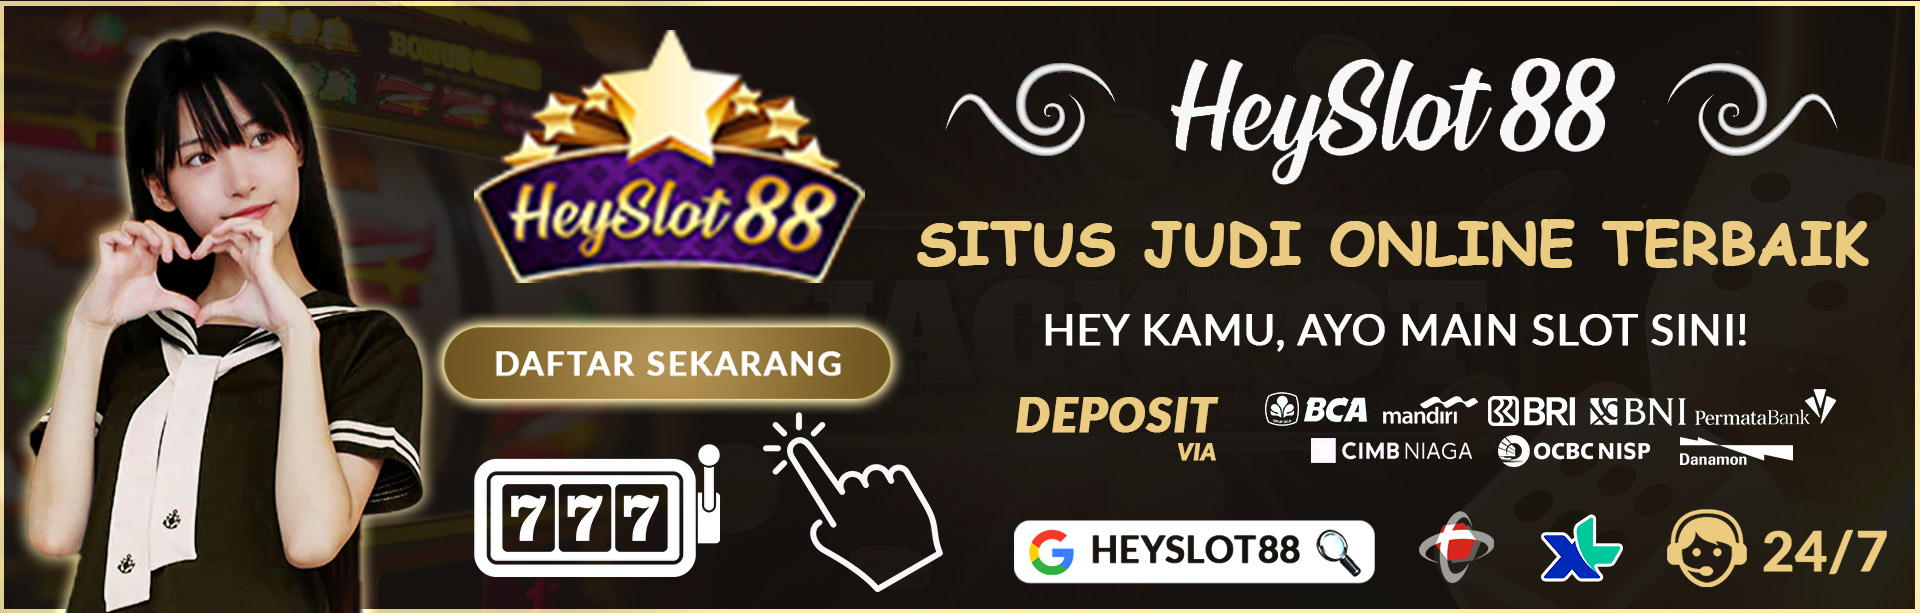 HEYSLOT88 - Situs Judi Slot Online Terbaik